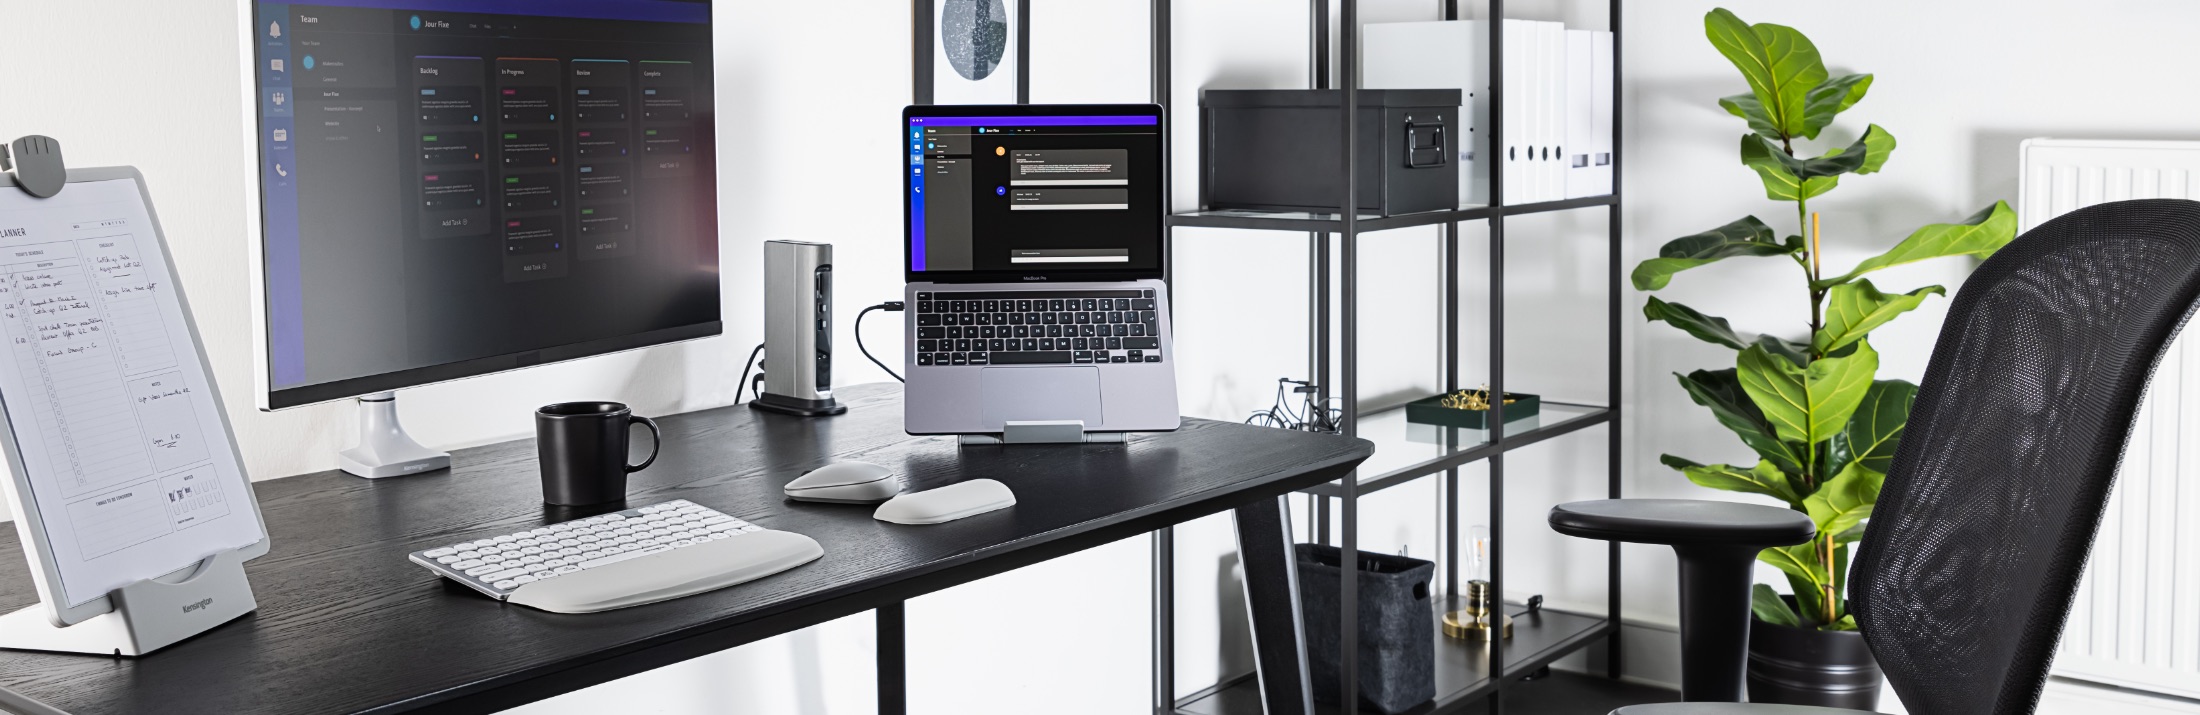 Desktop with Kensington wrist rest, keyboard, mouse, docking station, and laptop riser